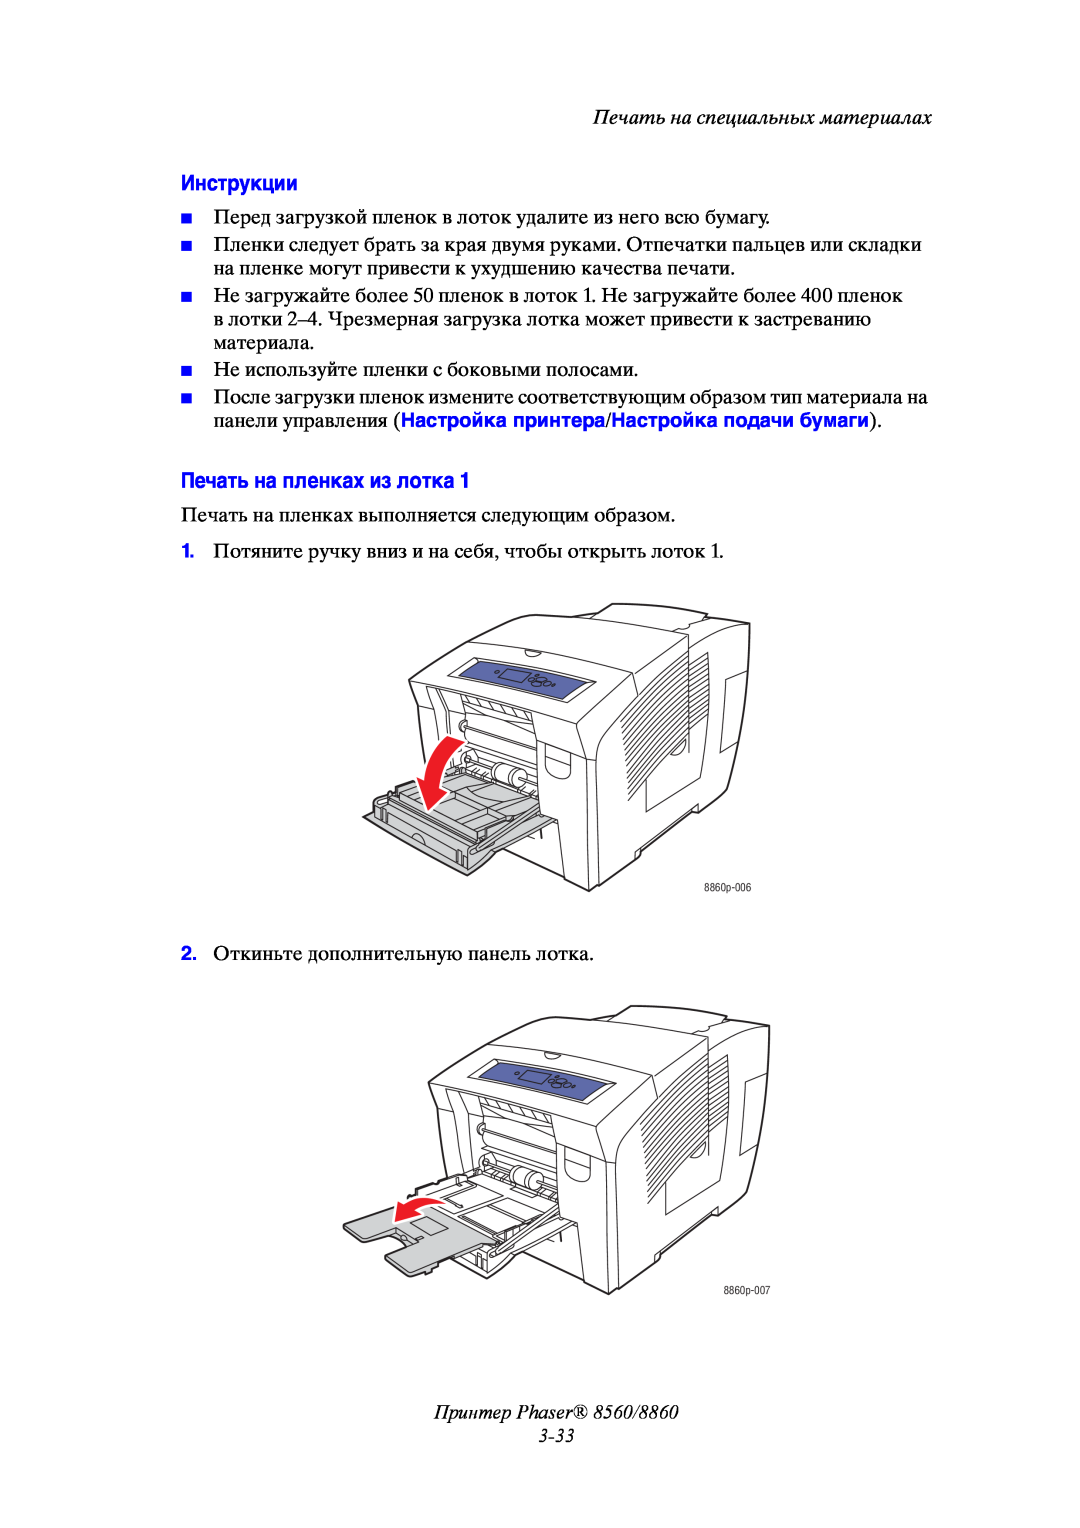 Xerox manual Инструкции, Печать на пленках из лотка, Принтер Phaser 8560/8860 3-33, Печать на специальных материалах 